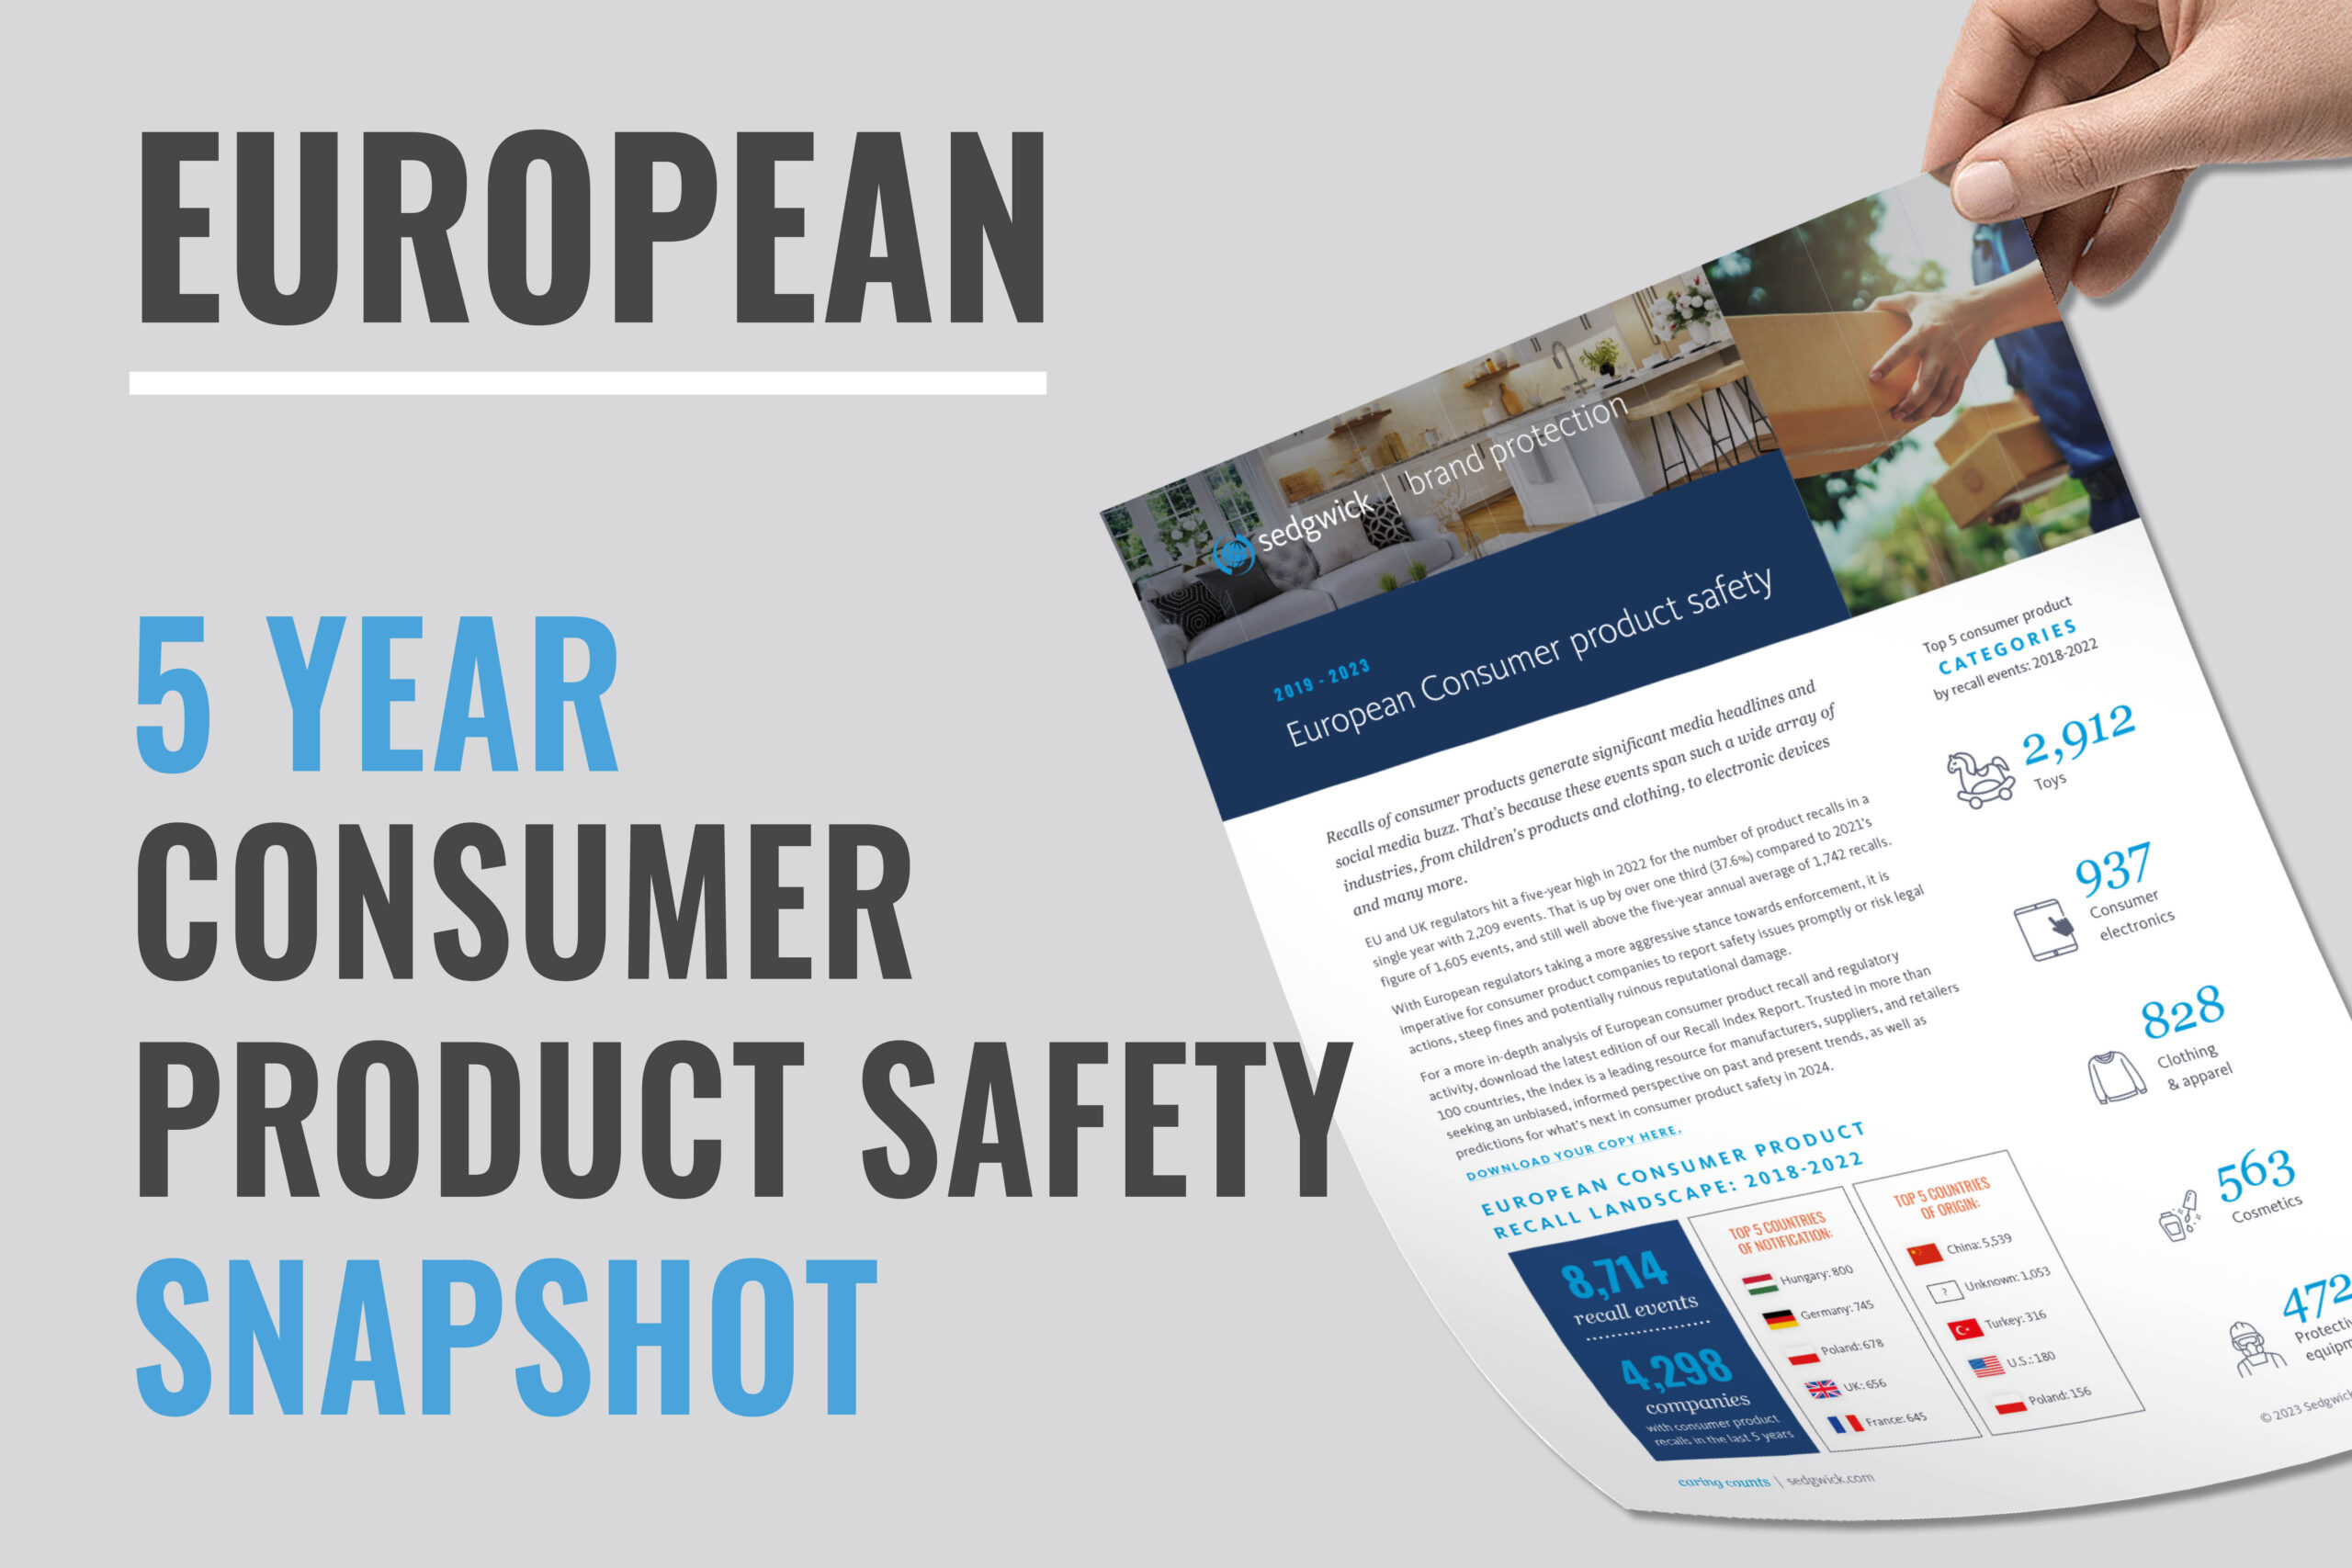 Informações sobre segurança e recall de produtos de consumo na Europa - Faça o download agora